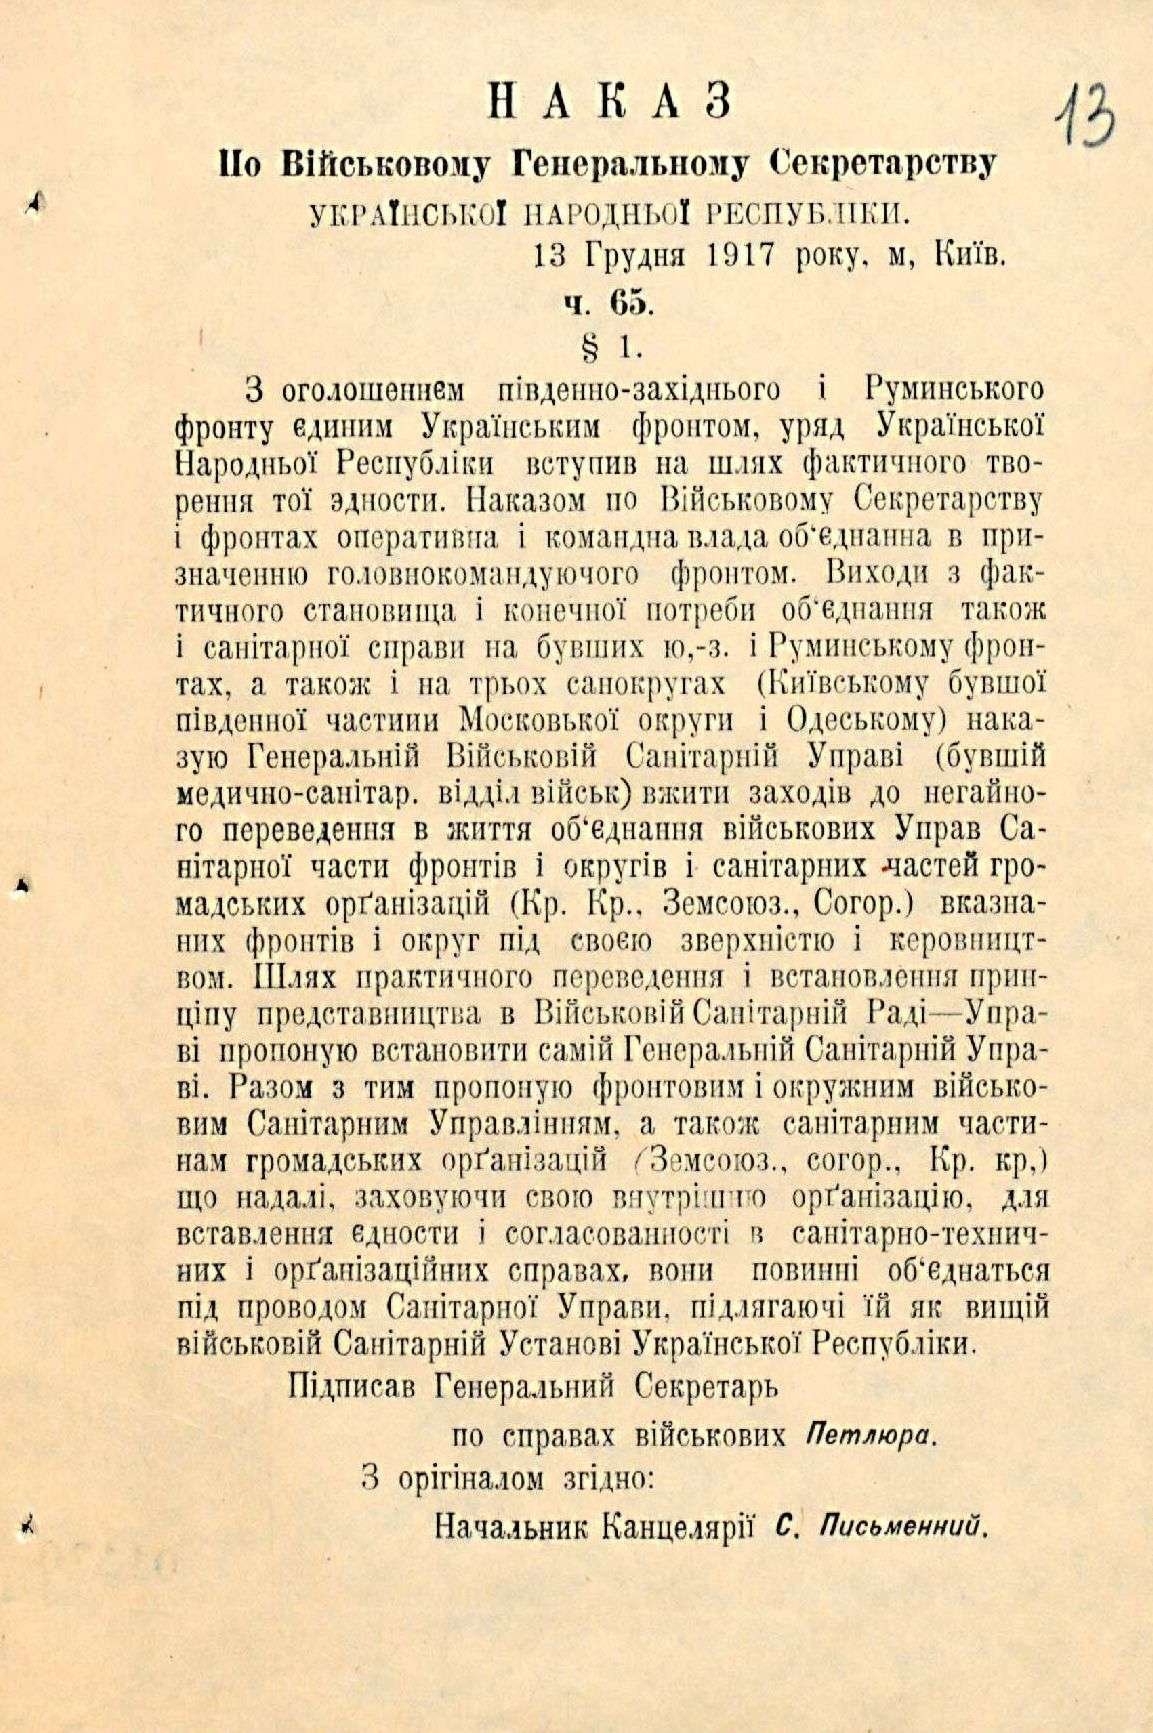 Наказ по Військовому генеральному секретарству УНР ч. 65 про Генеральну військово-санітарну управу. 13 грудня 1917 р.